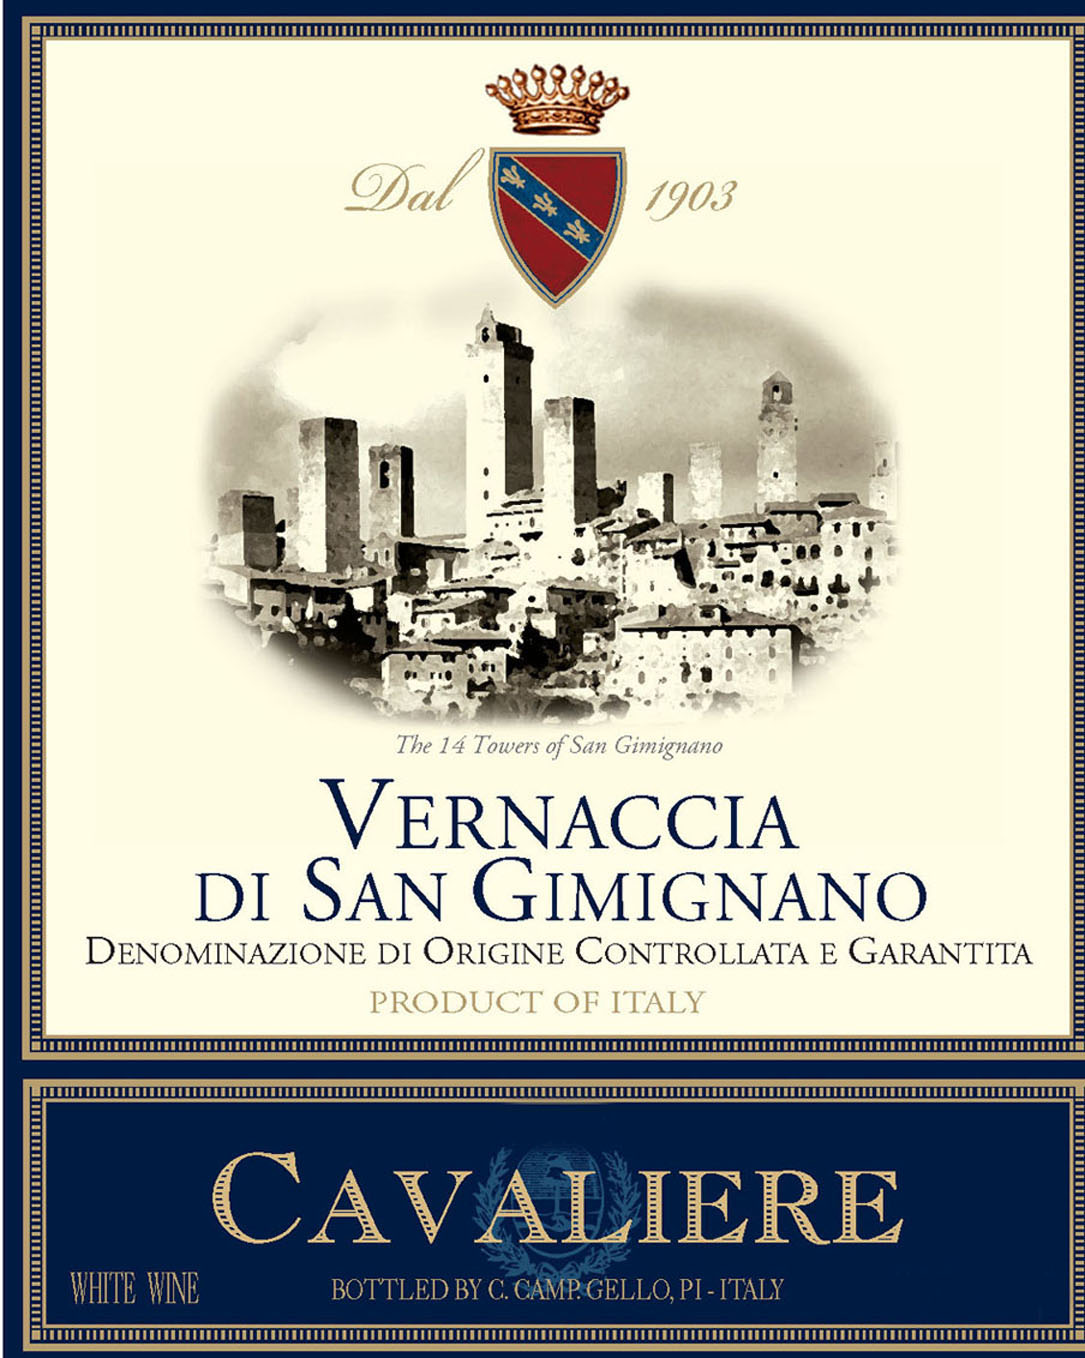 Cavaliere - Vernaccia Di San Gimignano label